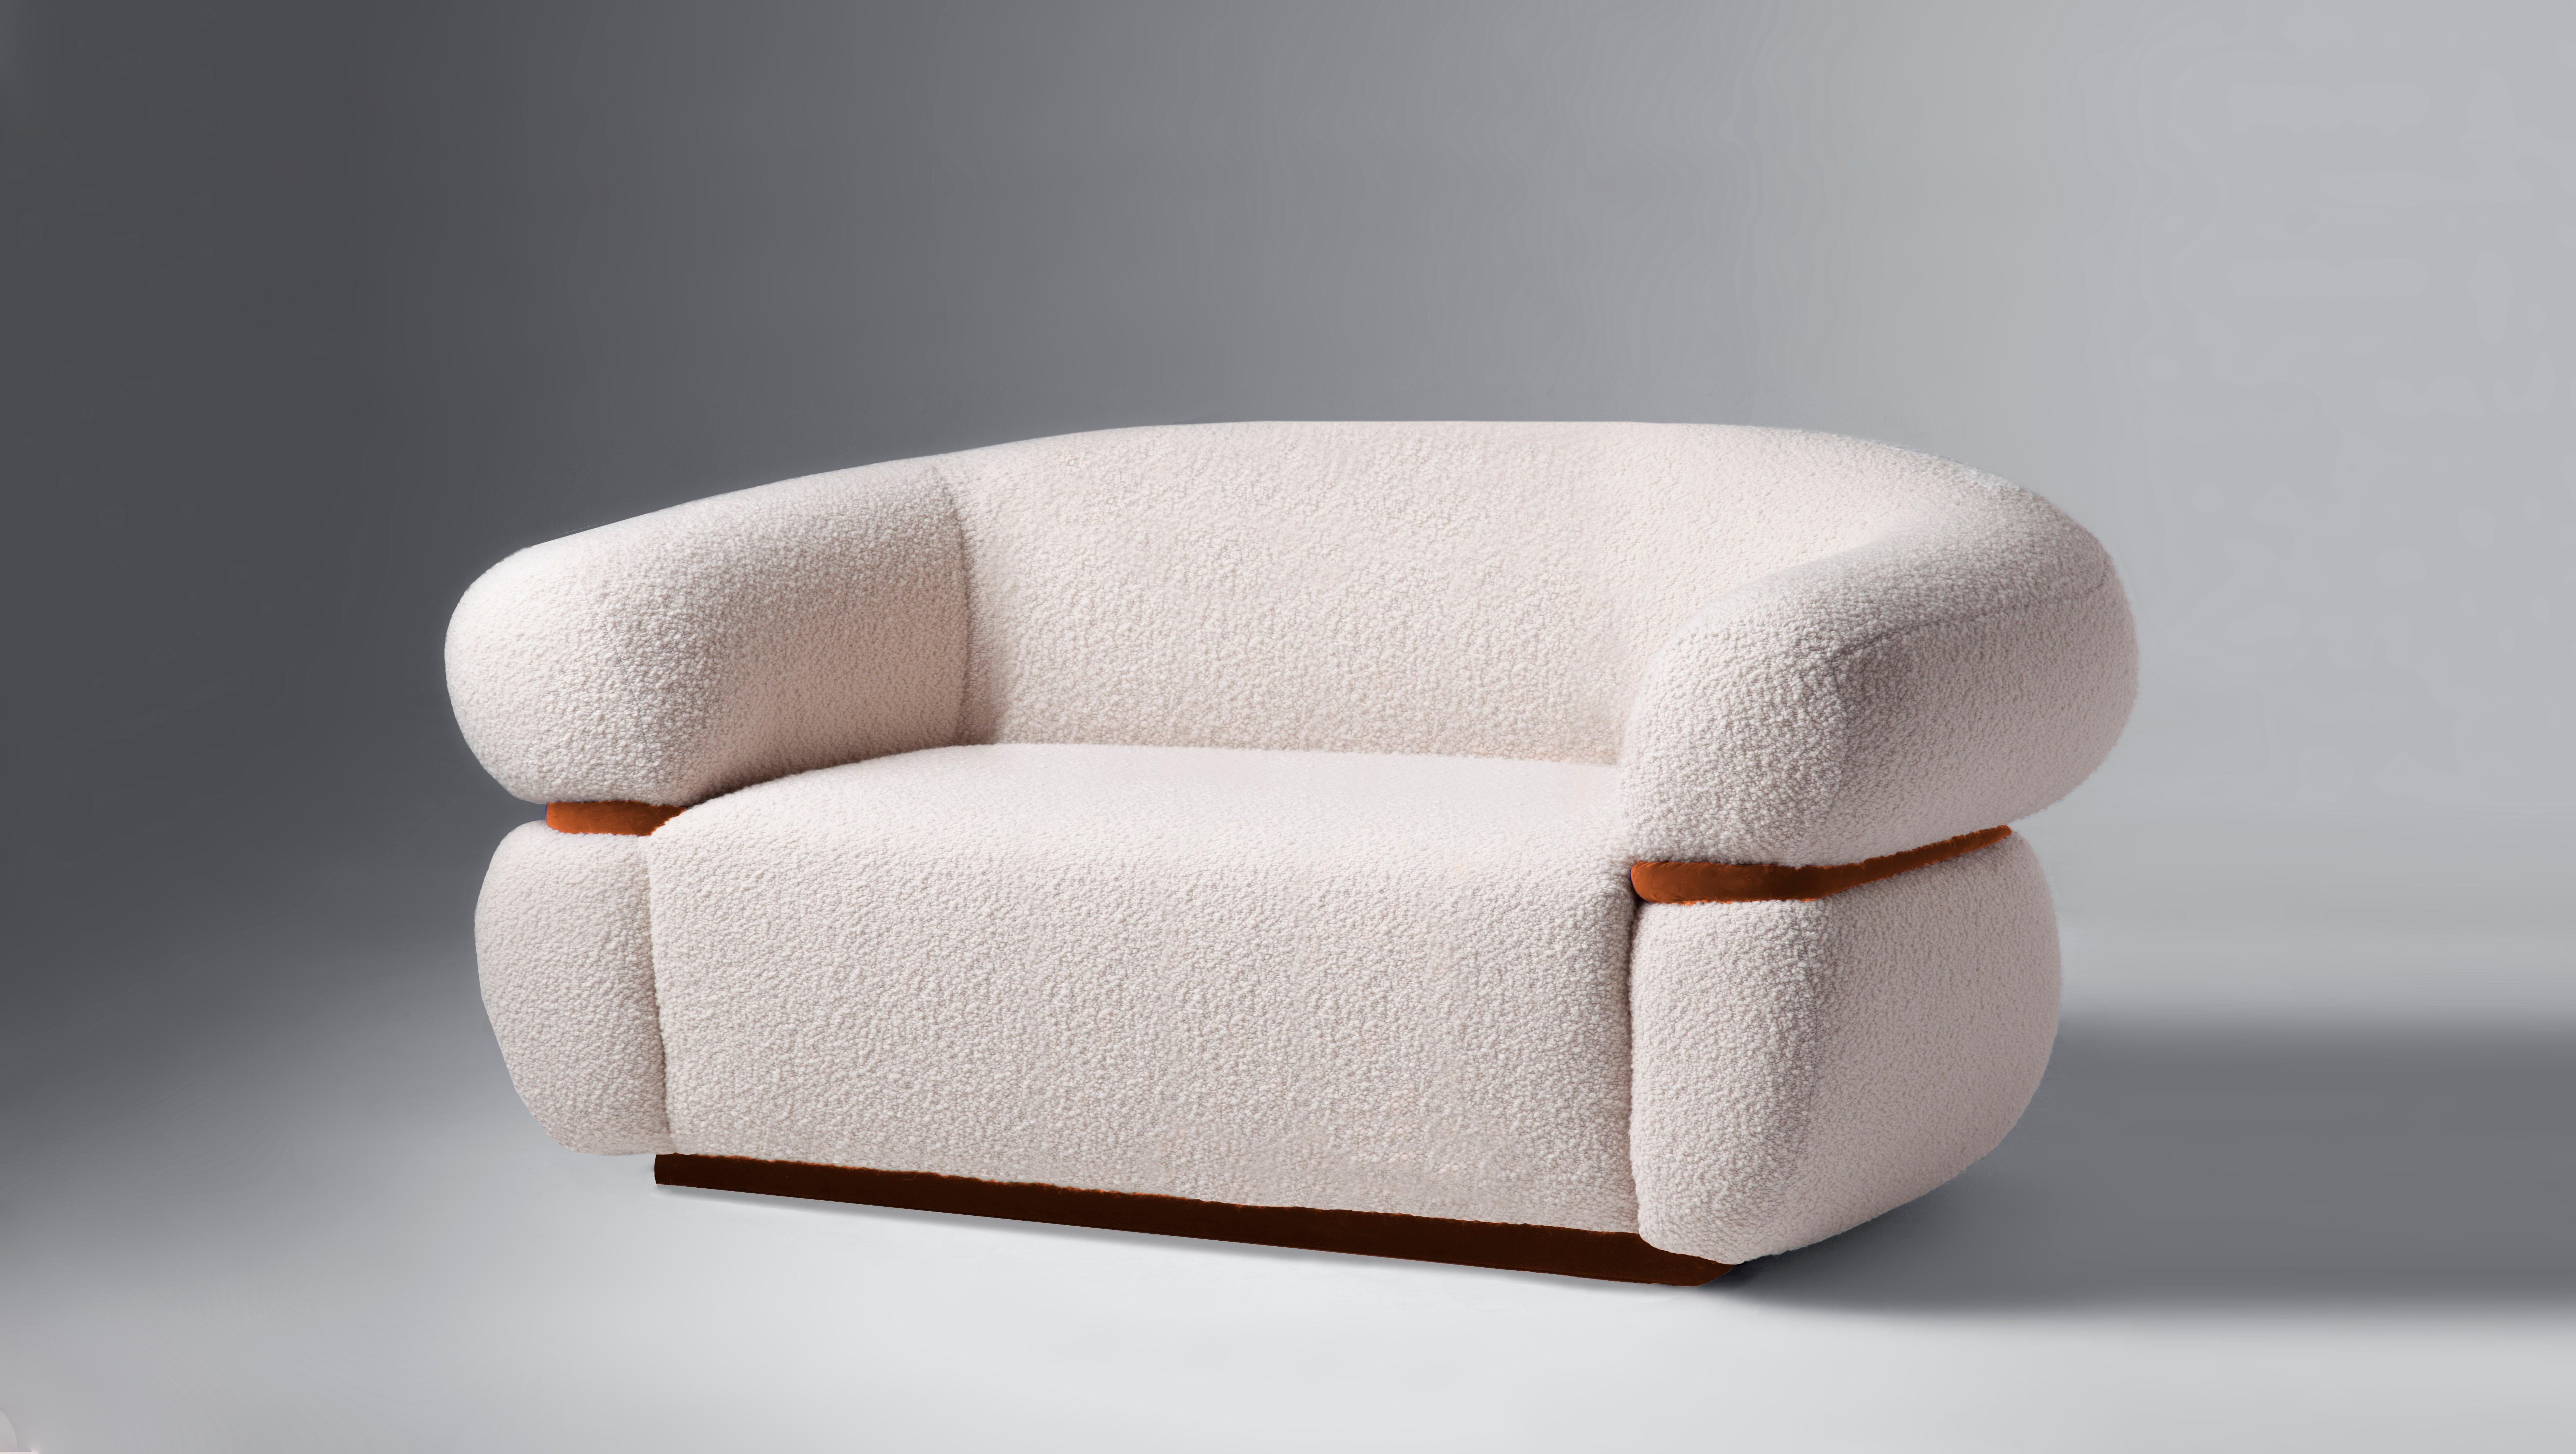 Wie eine warme Umarmung empfängt Sie das Malibu Sofa zum Verweilen und Entspannen. Als gehobene Hommage an das goldene Zeitalter des Midcentury-Designs und der organischen Architektur strahlt er durch seine ungewöhnlichen Proportionen und starken